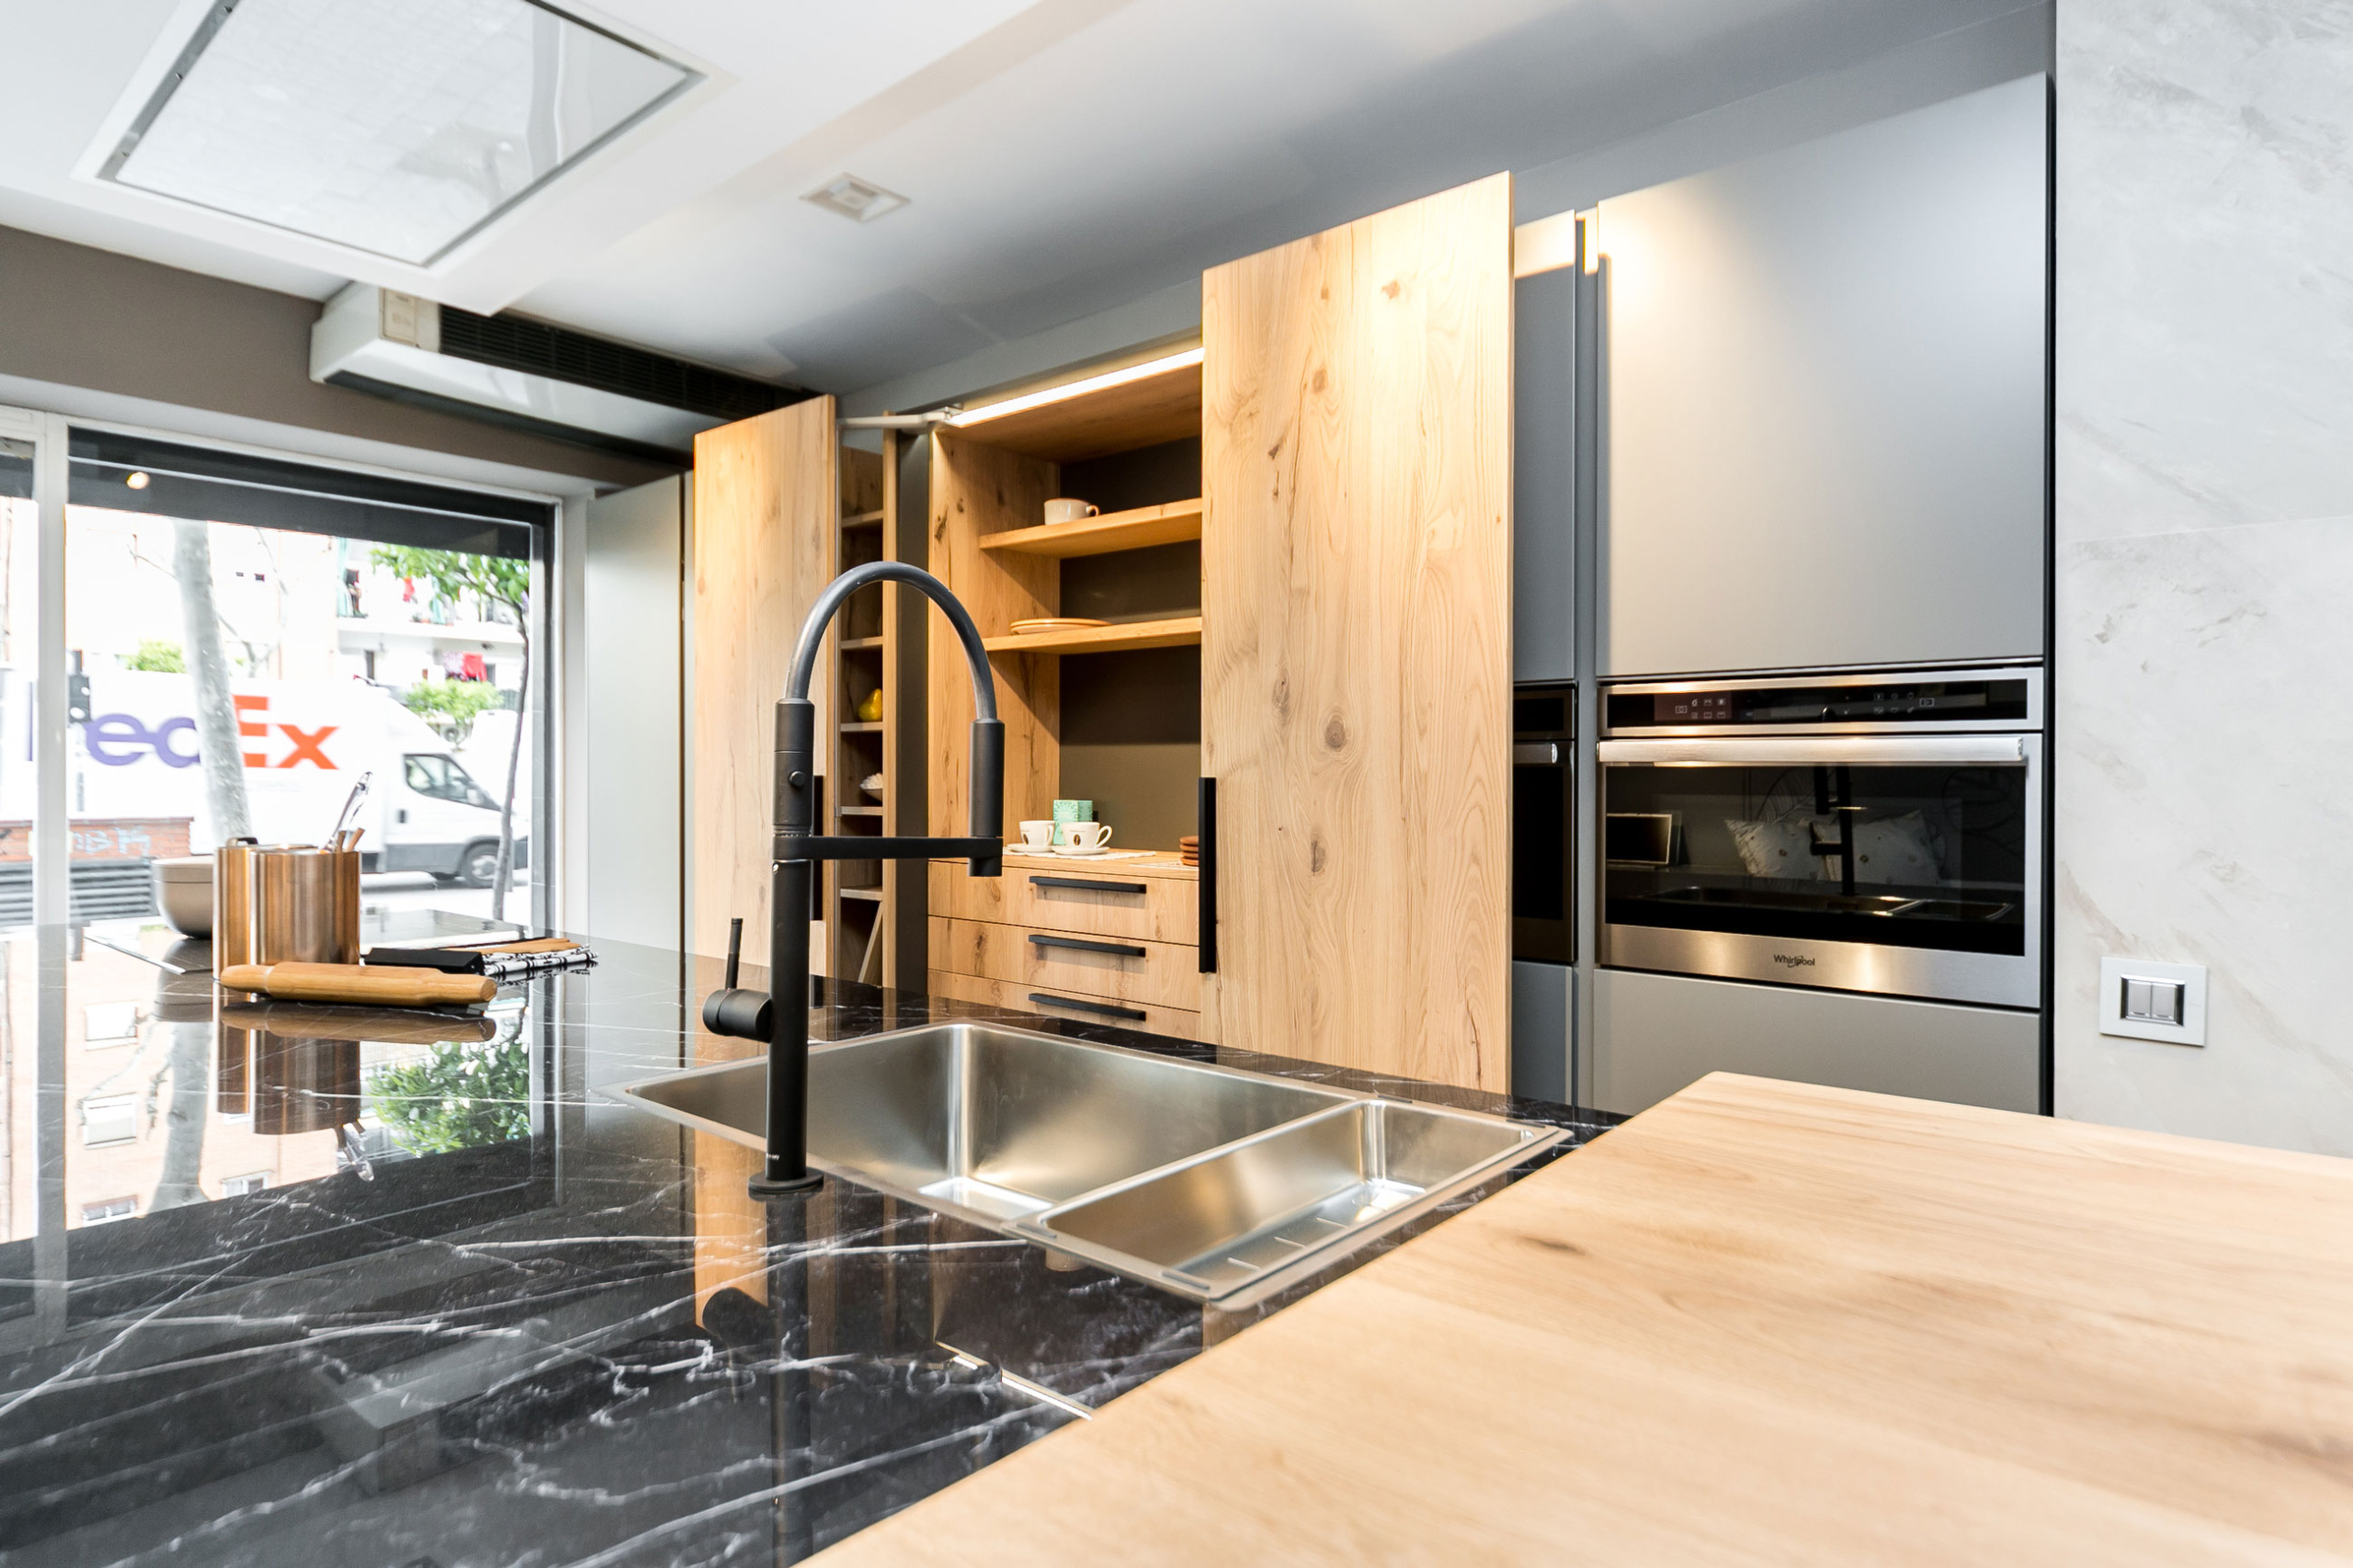 Cocina en acero inoxidable diseñada por Buratti Architects